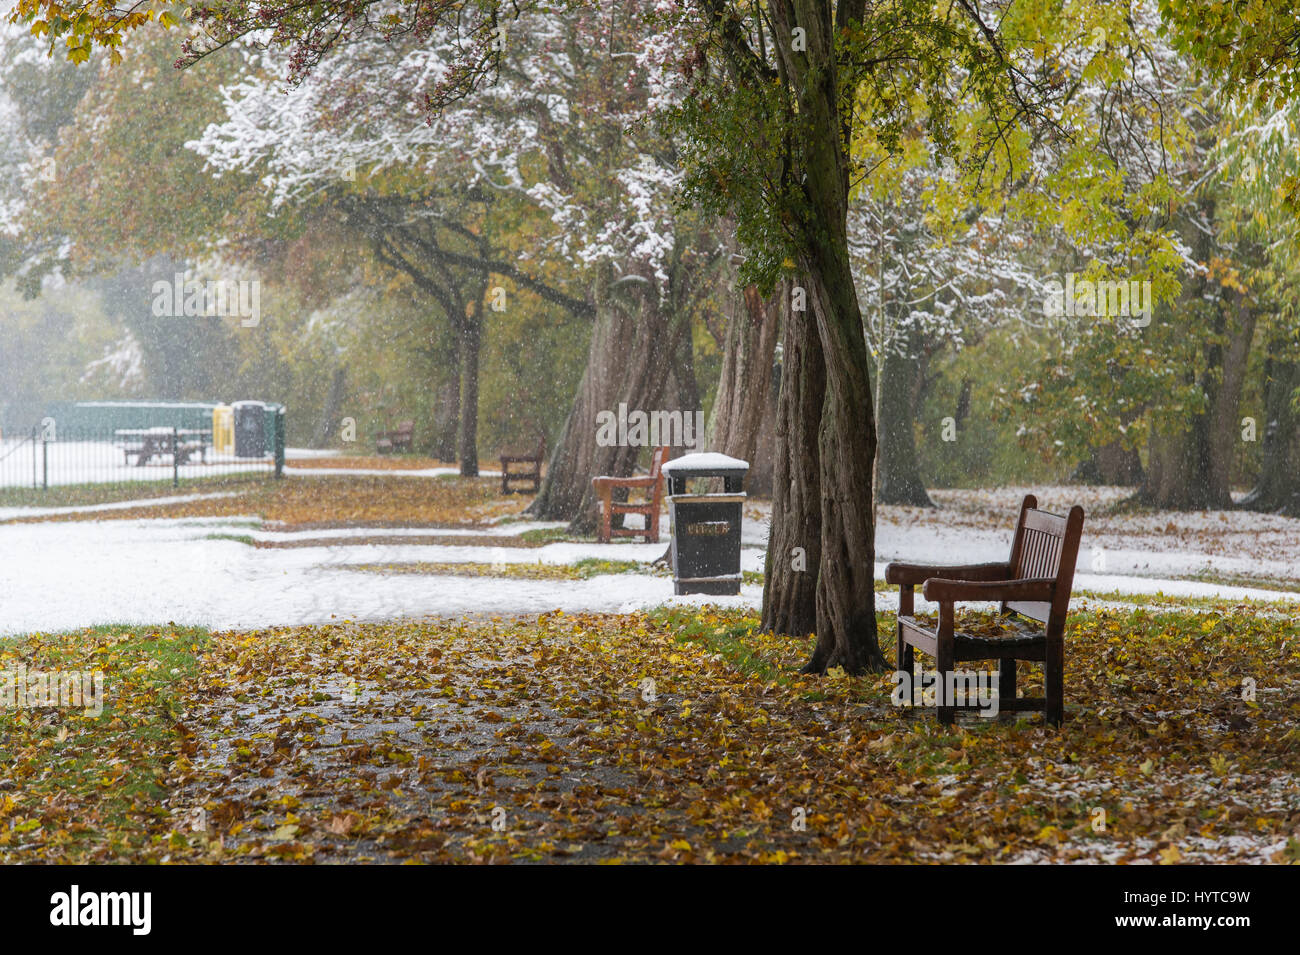 Sur neige froide journée, de l'automne. Vue sur parc bordé d'arbres, chemin recouvert de neige & leaves - Riverside Gardens, Ilkley, West Yorkshire, England, GB, au Royaume-Uni. Banque D'Images